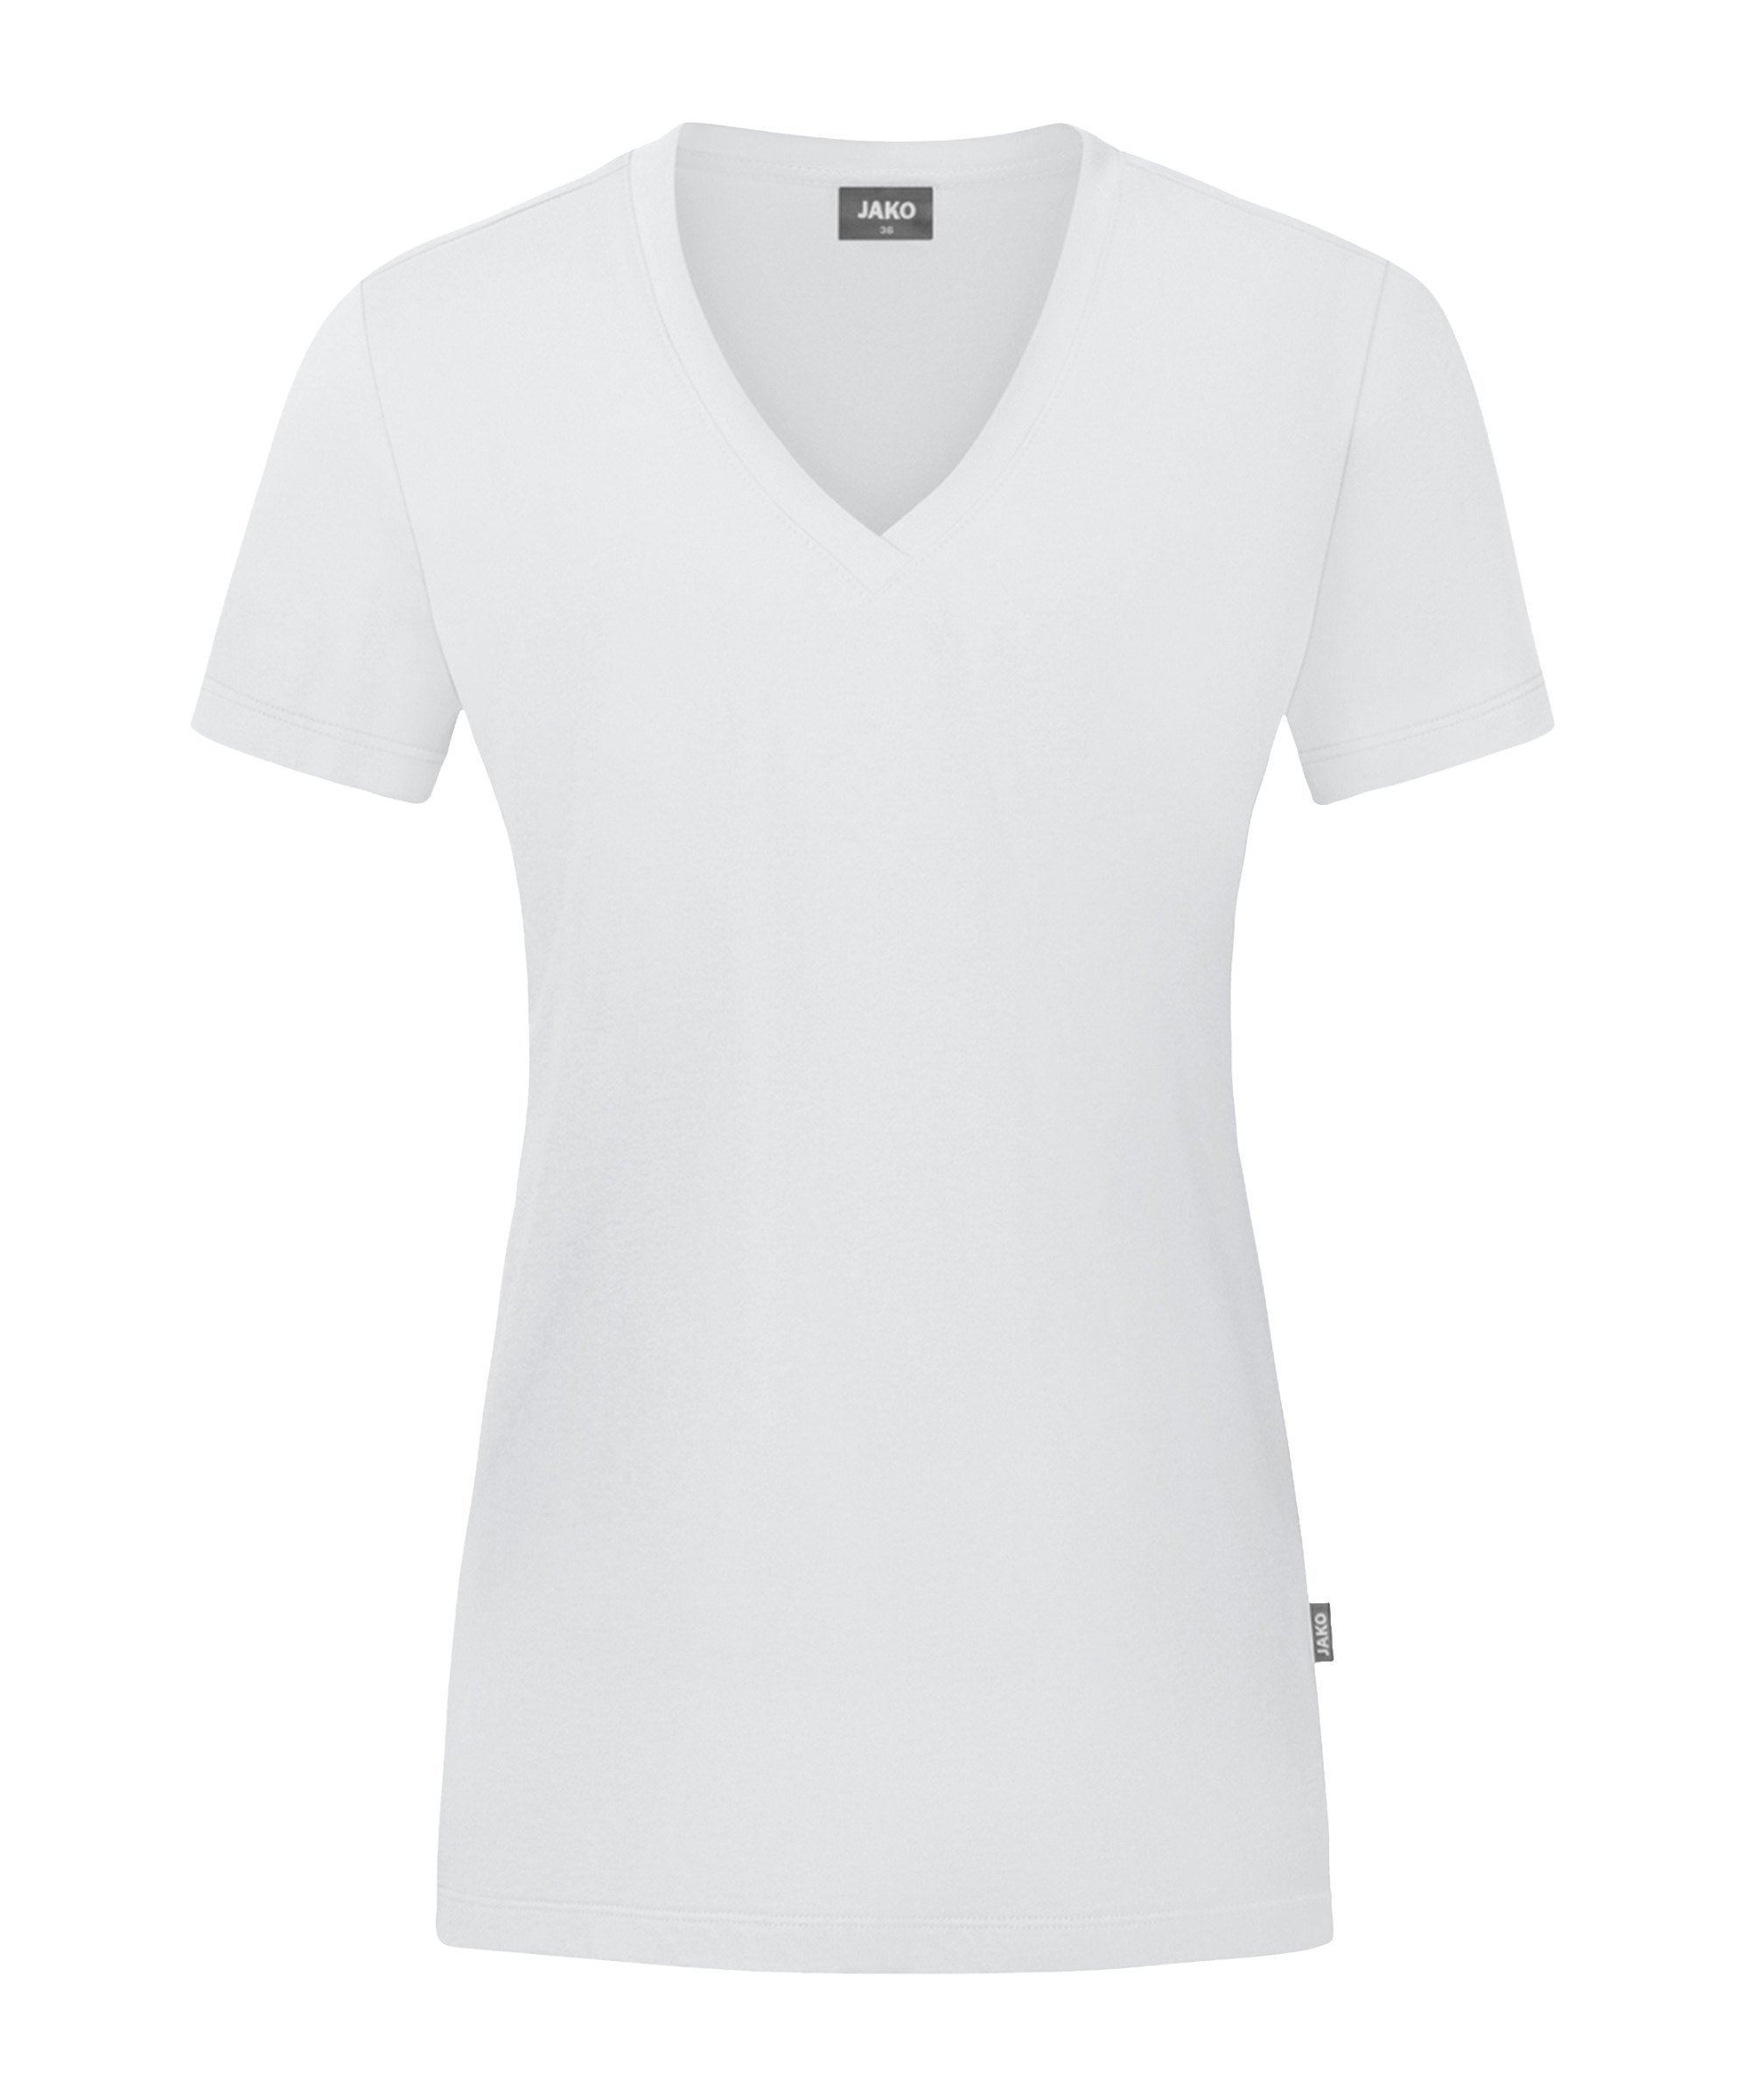 JAKO Organic T-Shirt Damen Weiss F000 - weiss